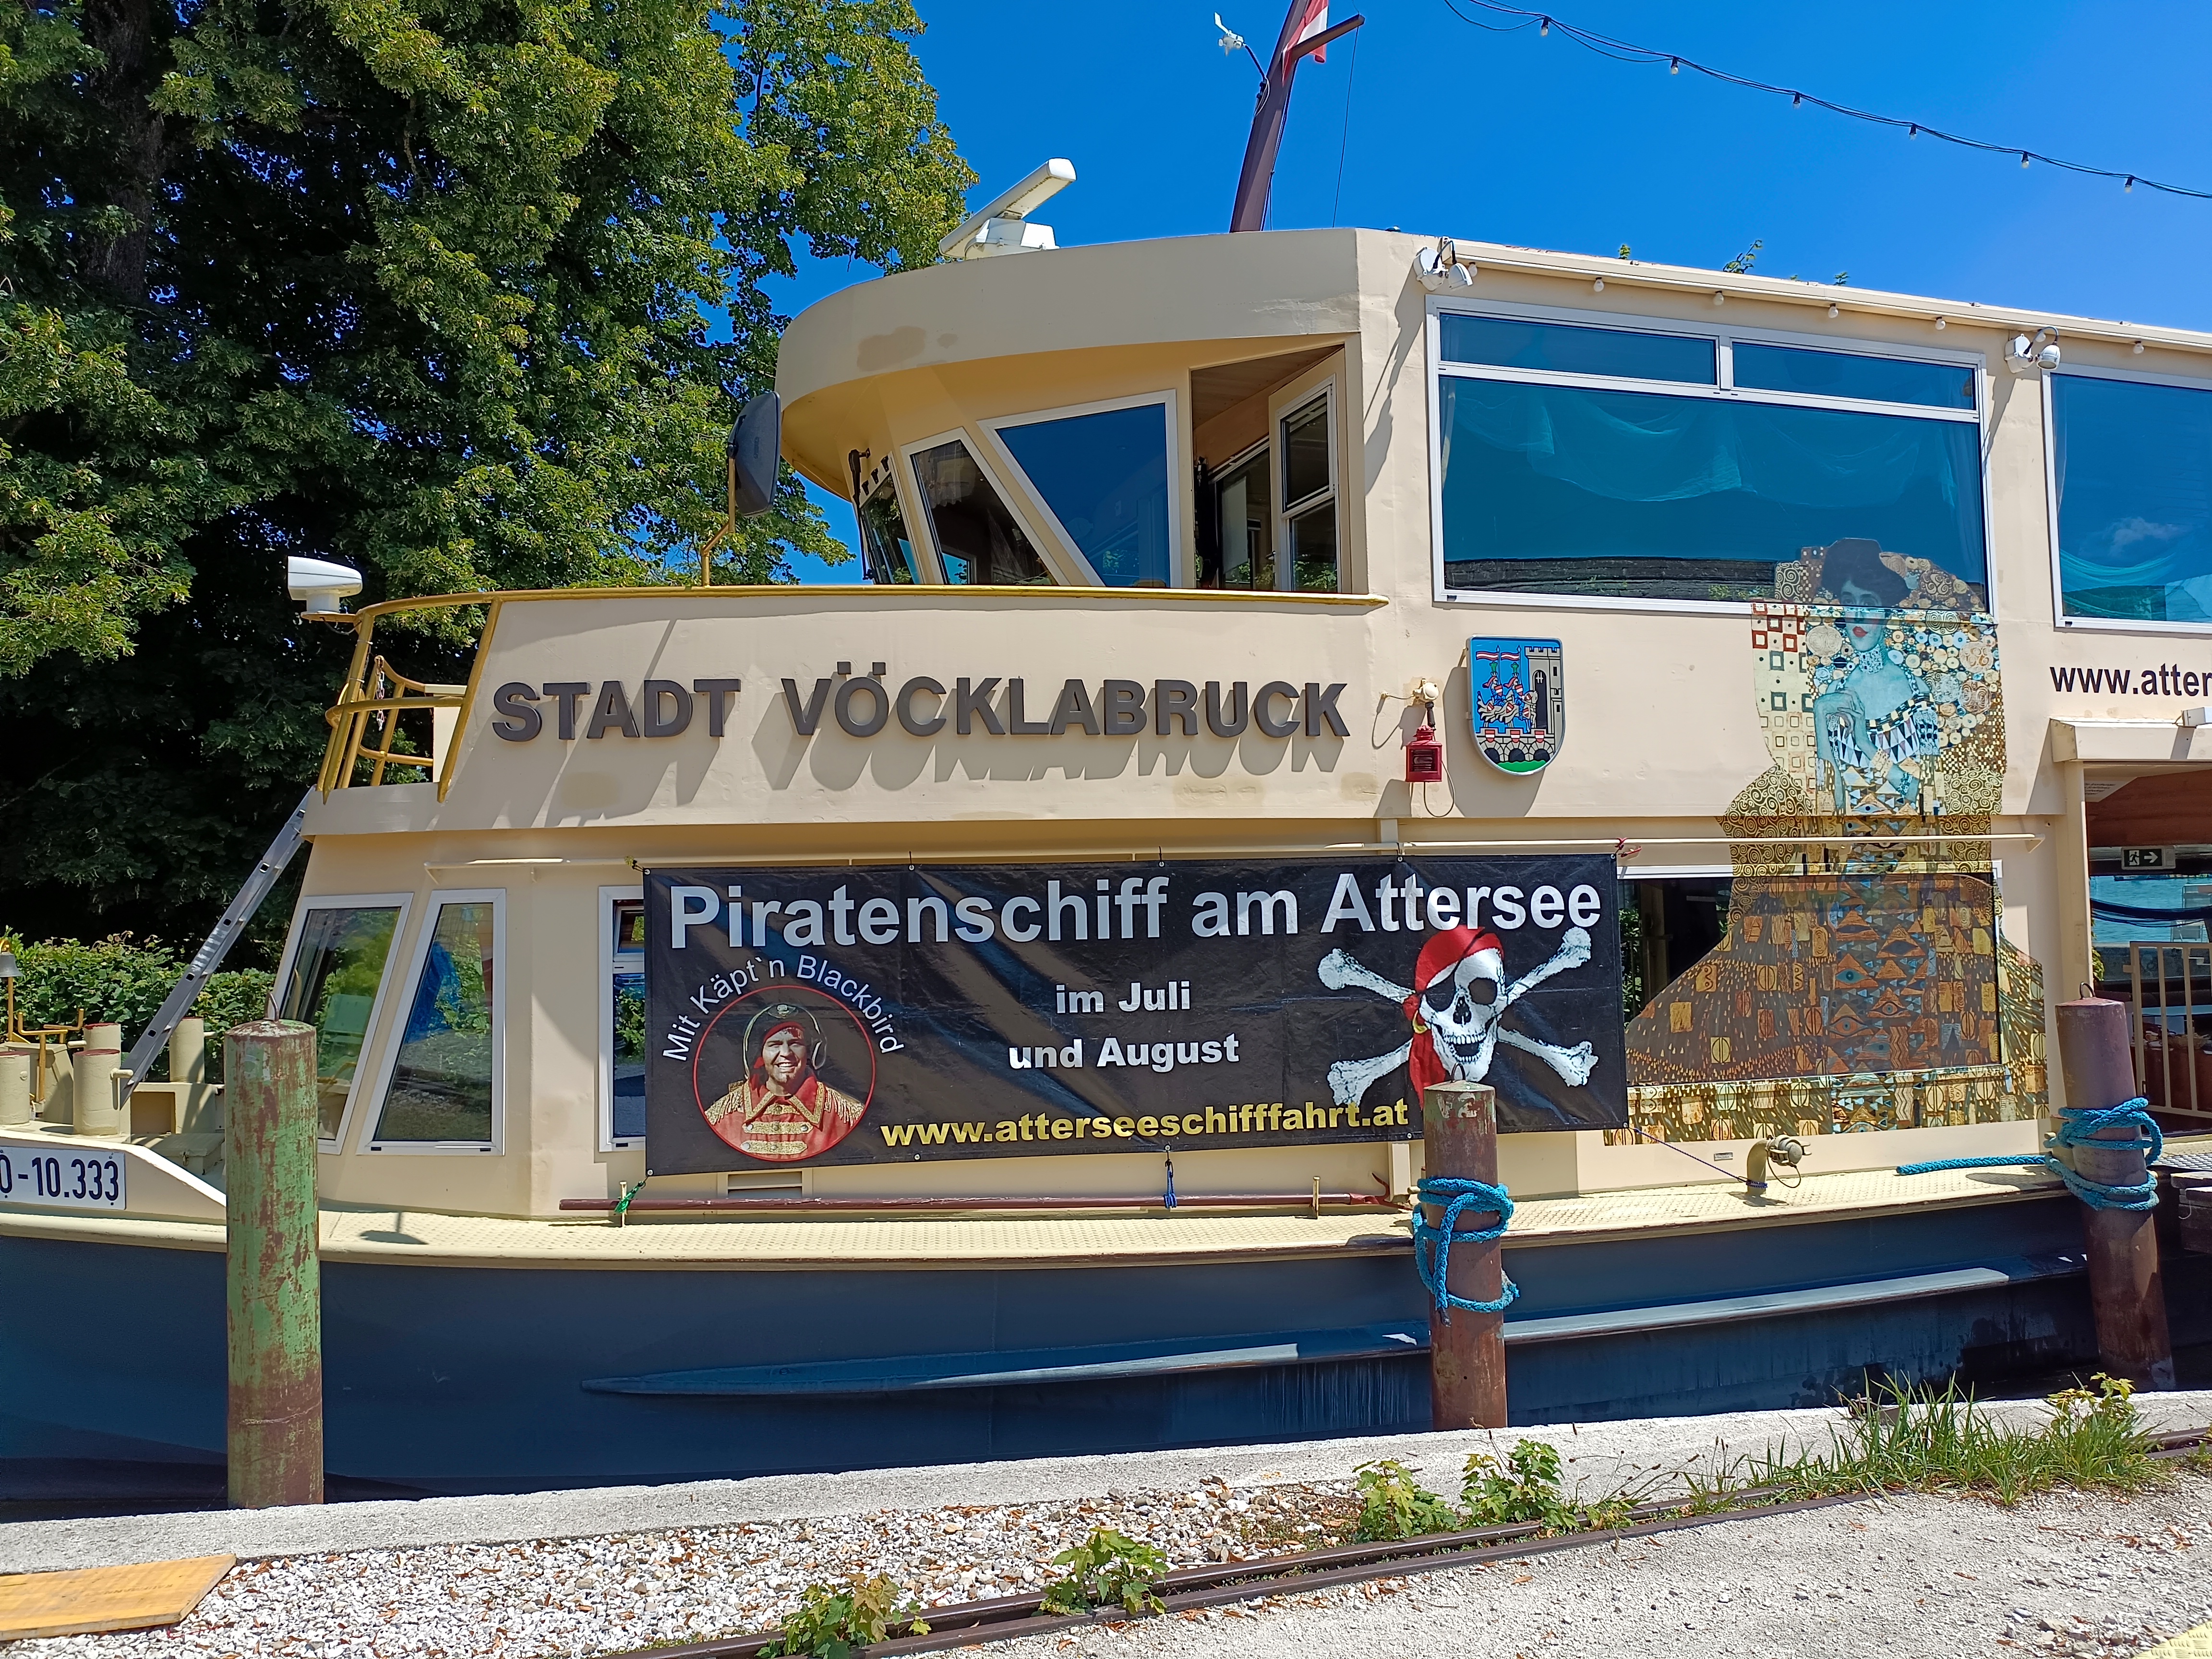 Piratenschiff am Attersee